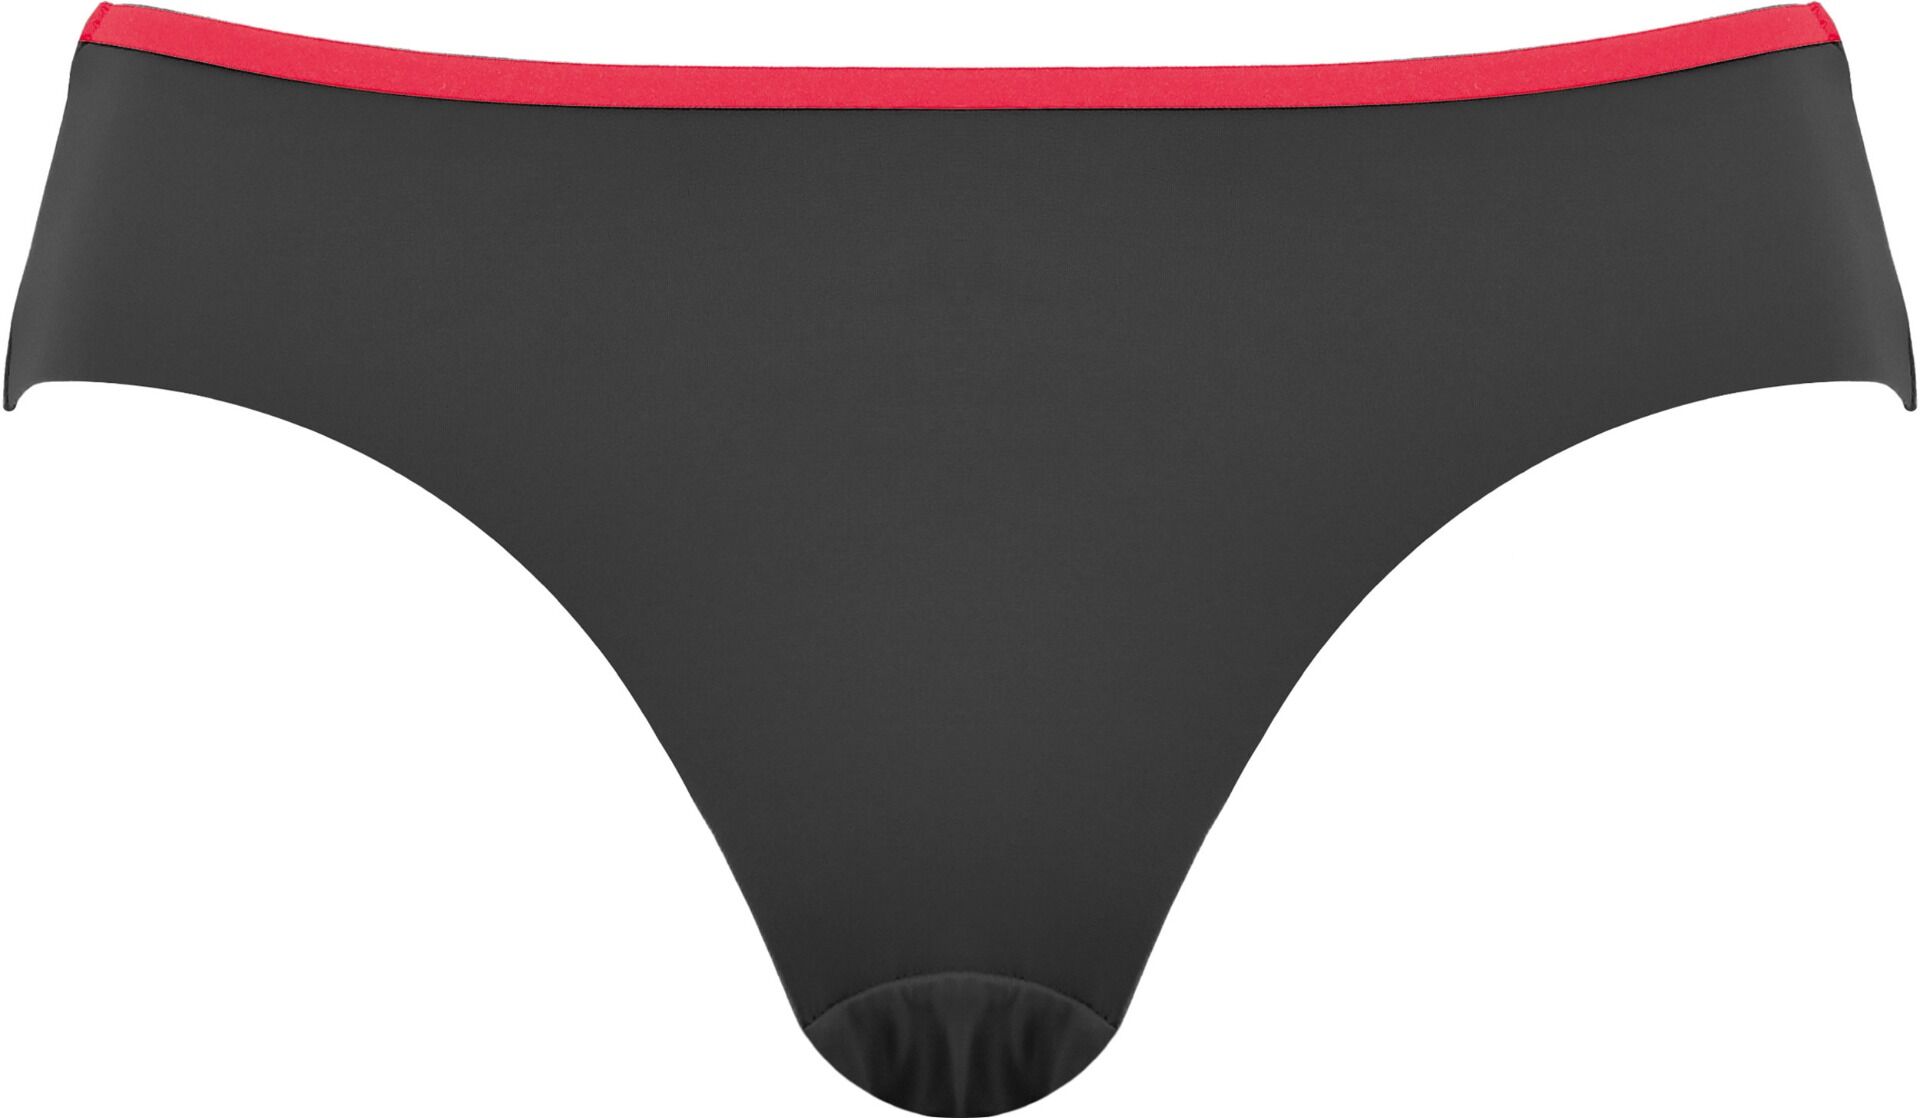 Dames Bikini Slip Zwart/Rood